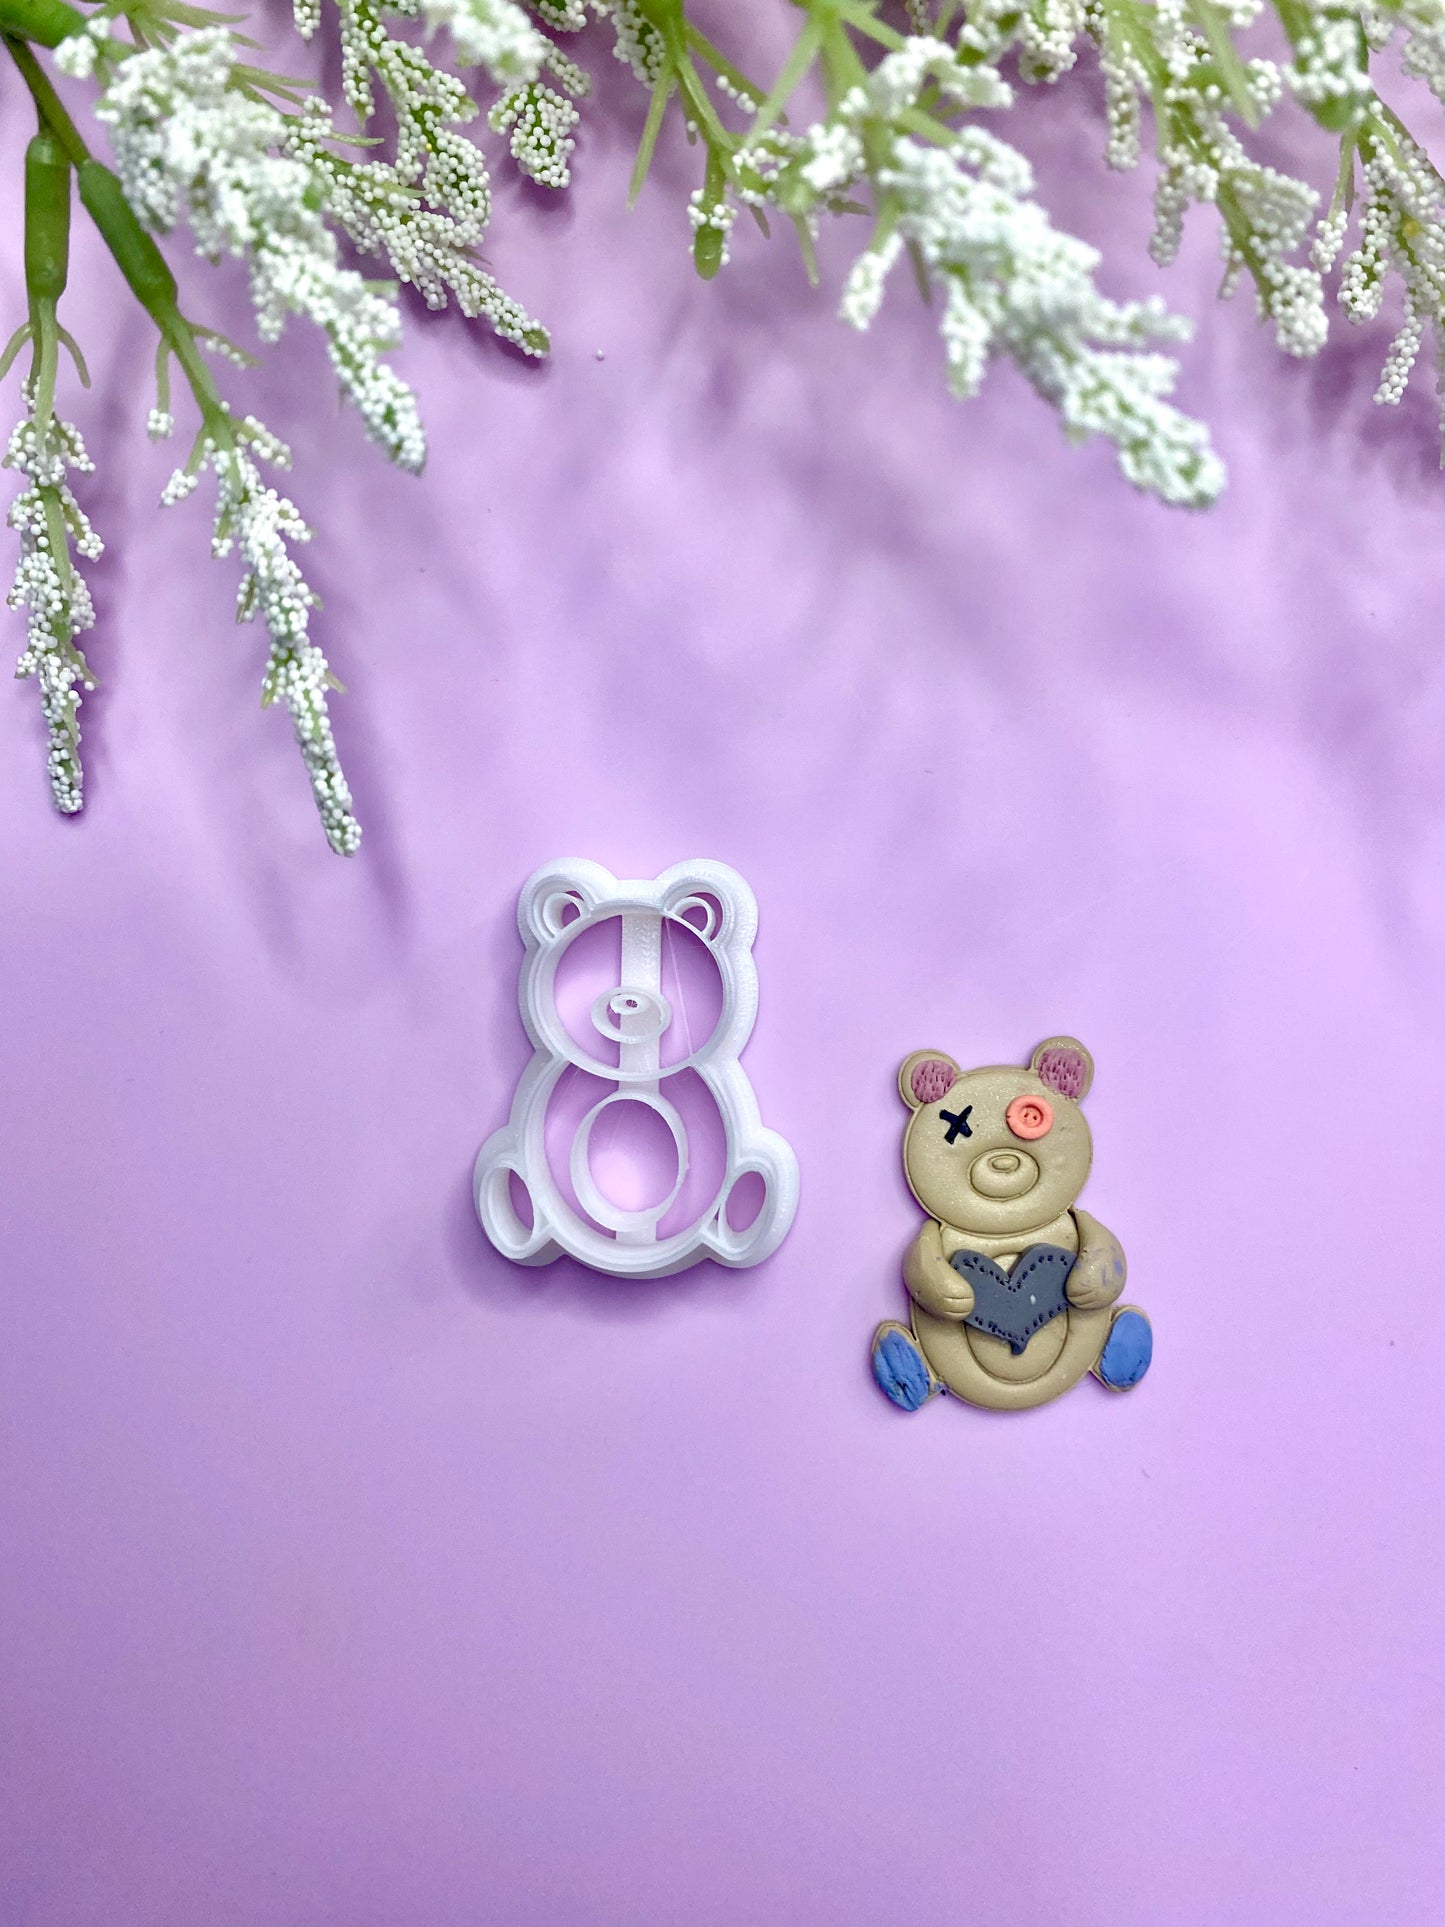 Teddy Bear - Polymer Clay Cutter